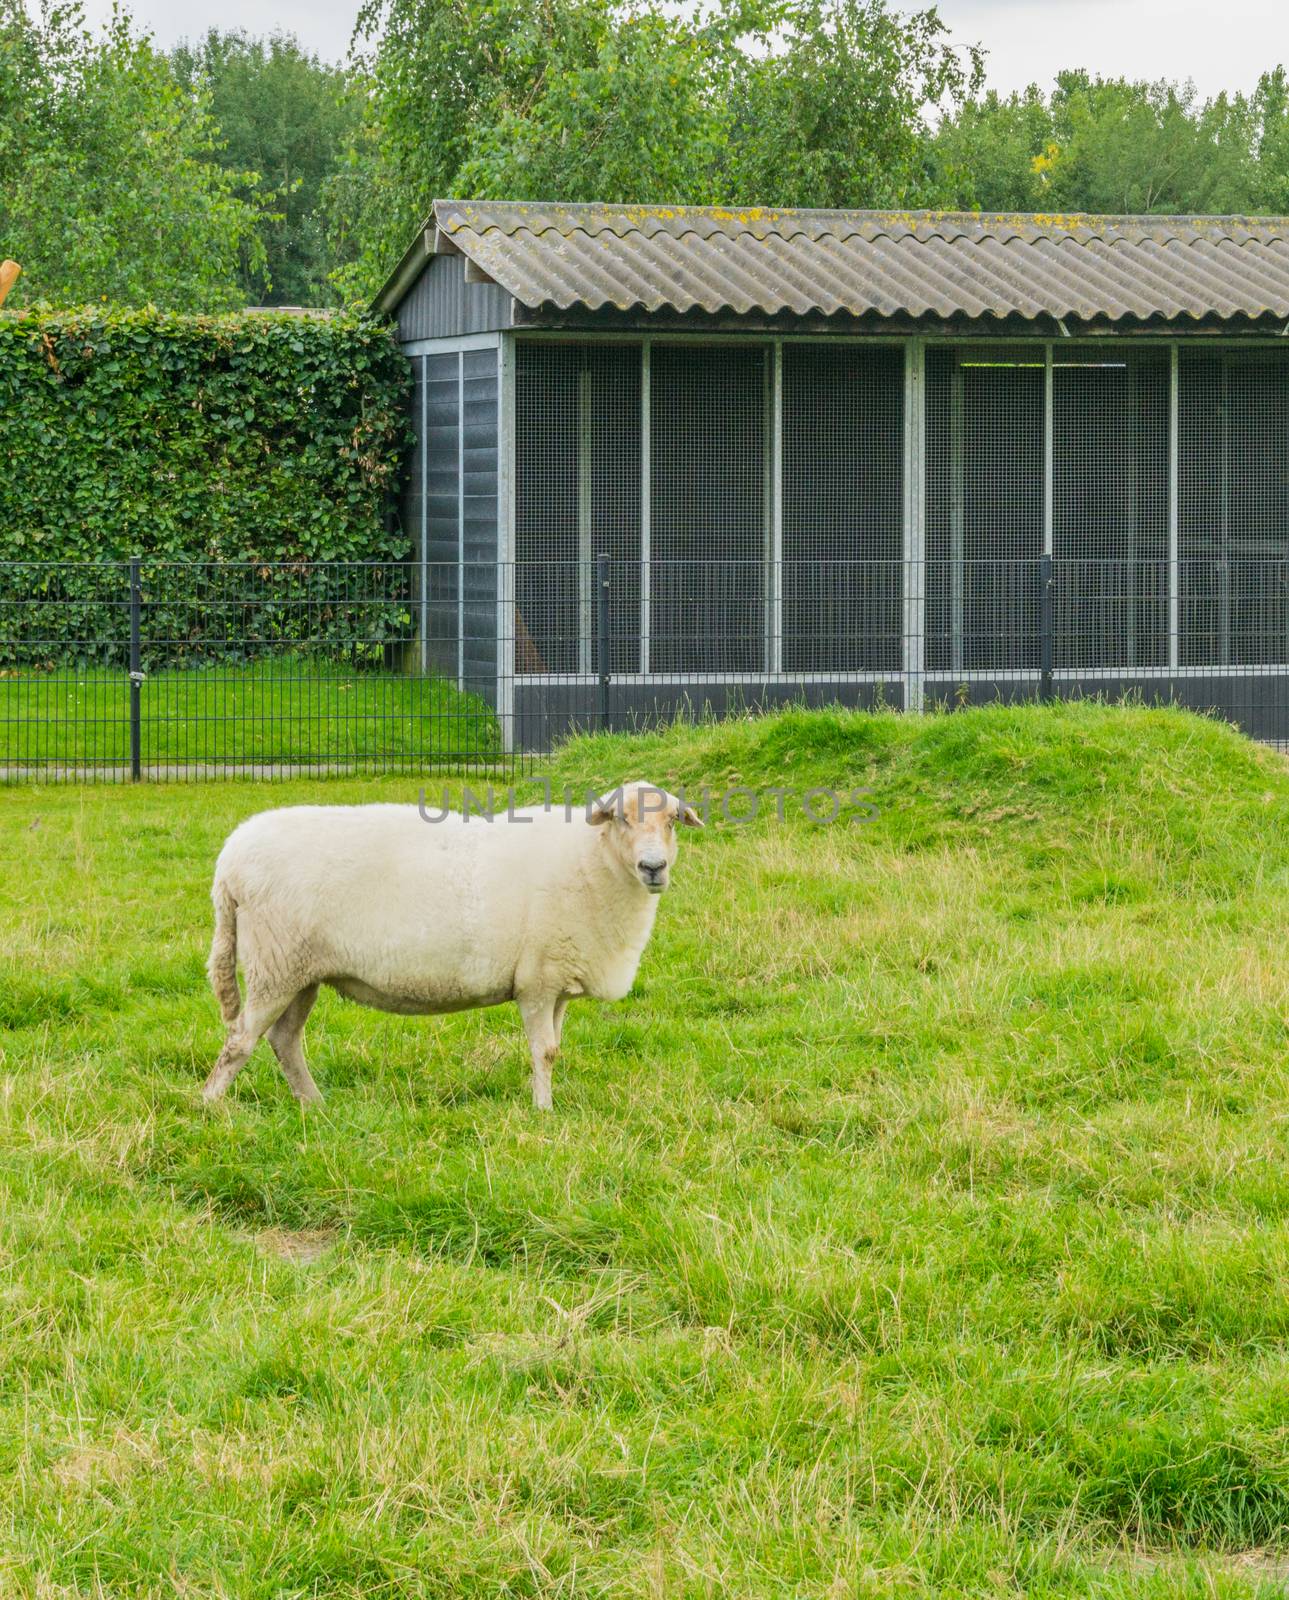 big sheep in the meadow looking by charlottebleijenberg